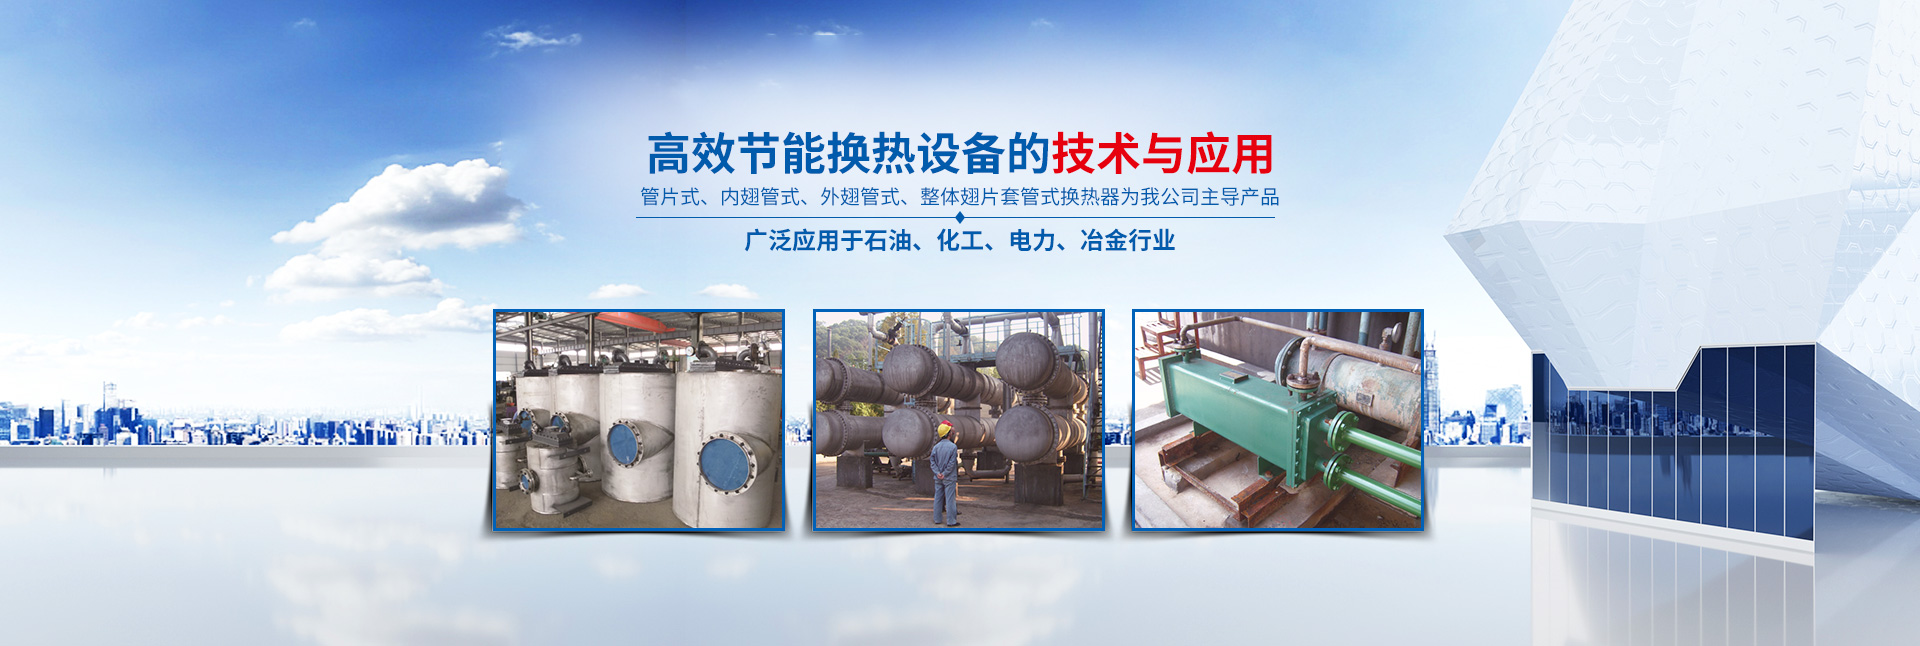 湖南省中達換熱裝備有限公司-高效節能|換熱設備|中壓容器設計